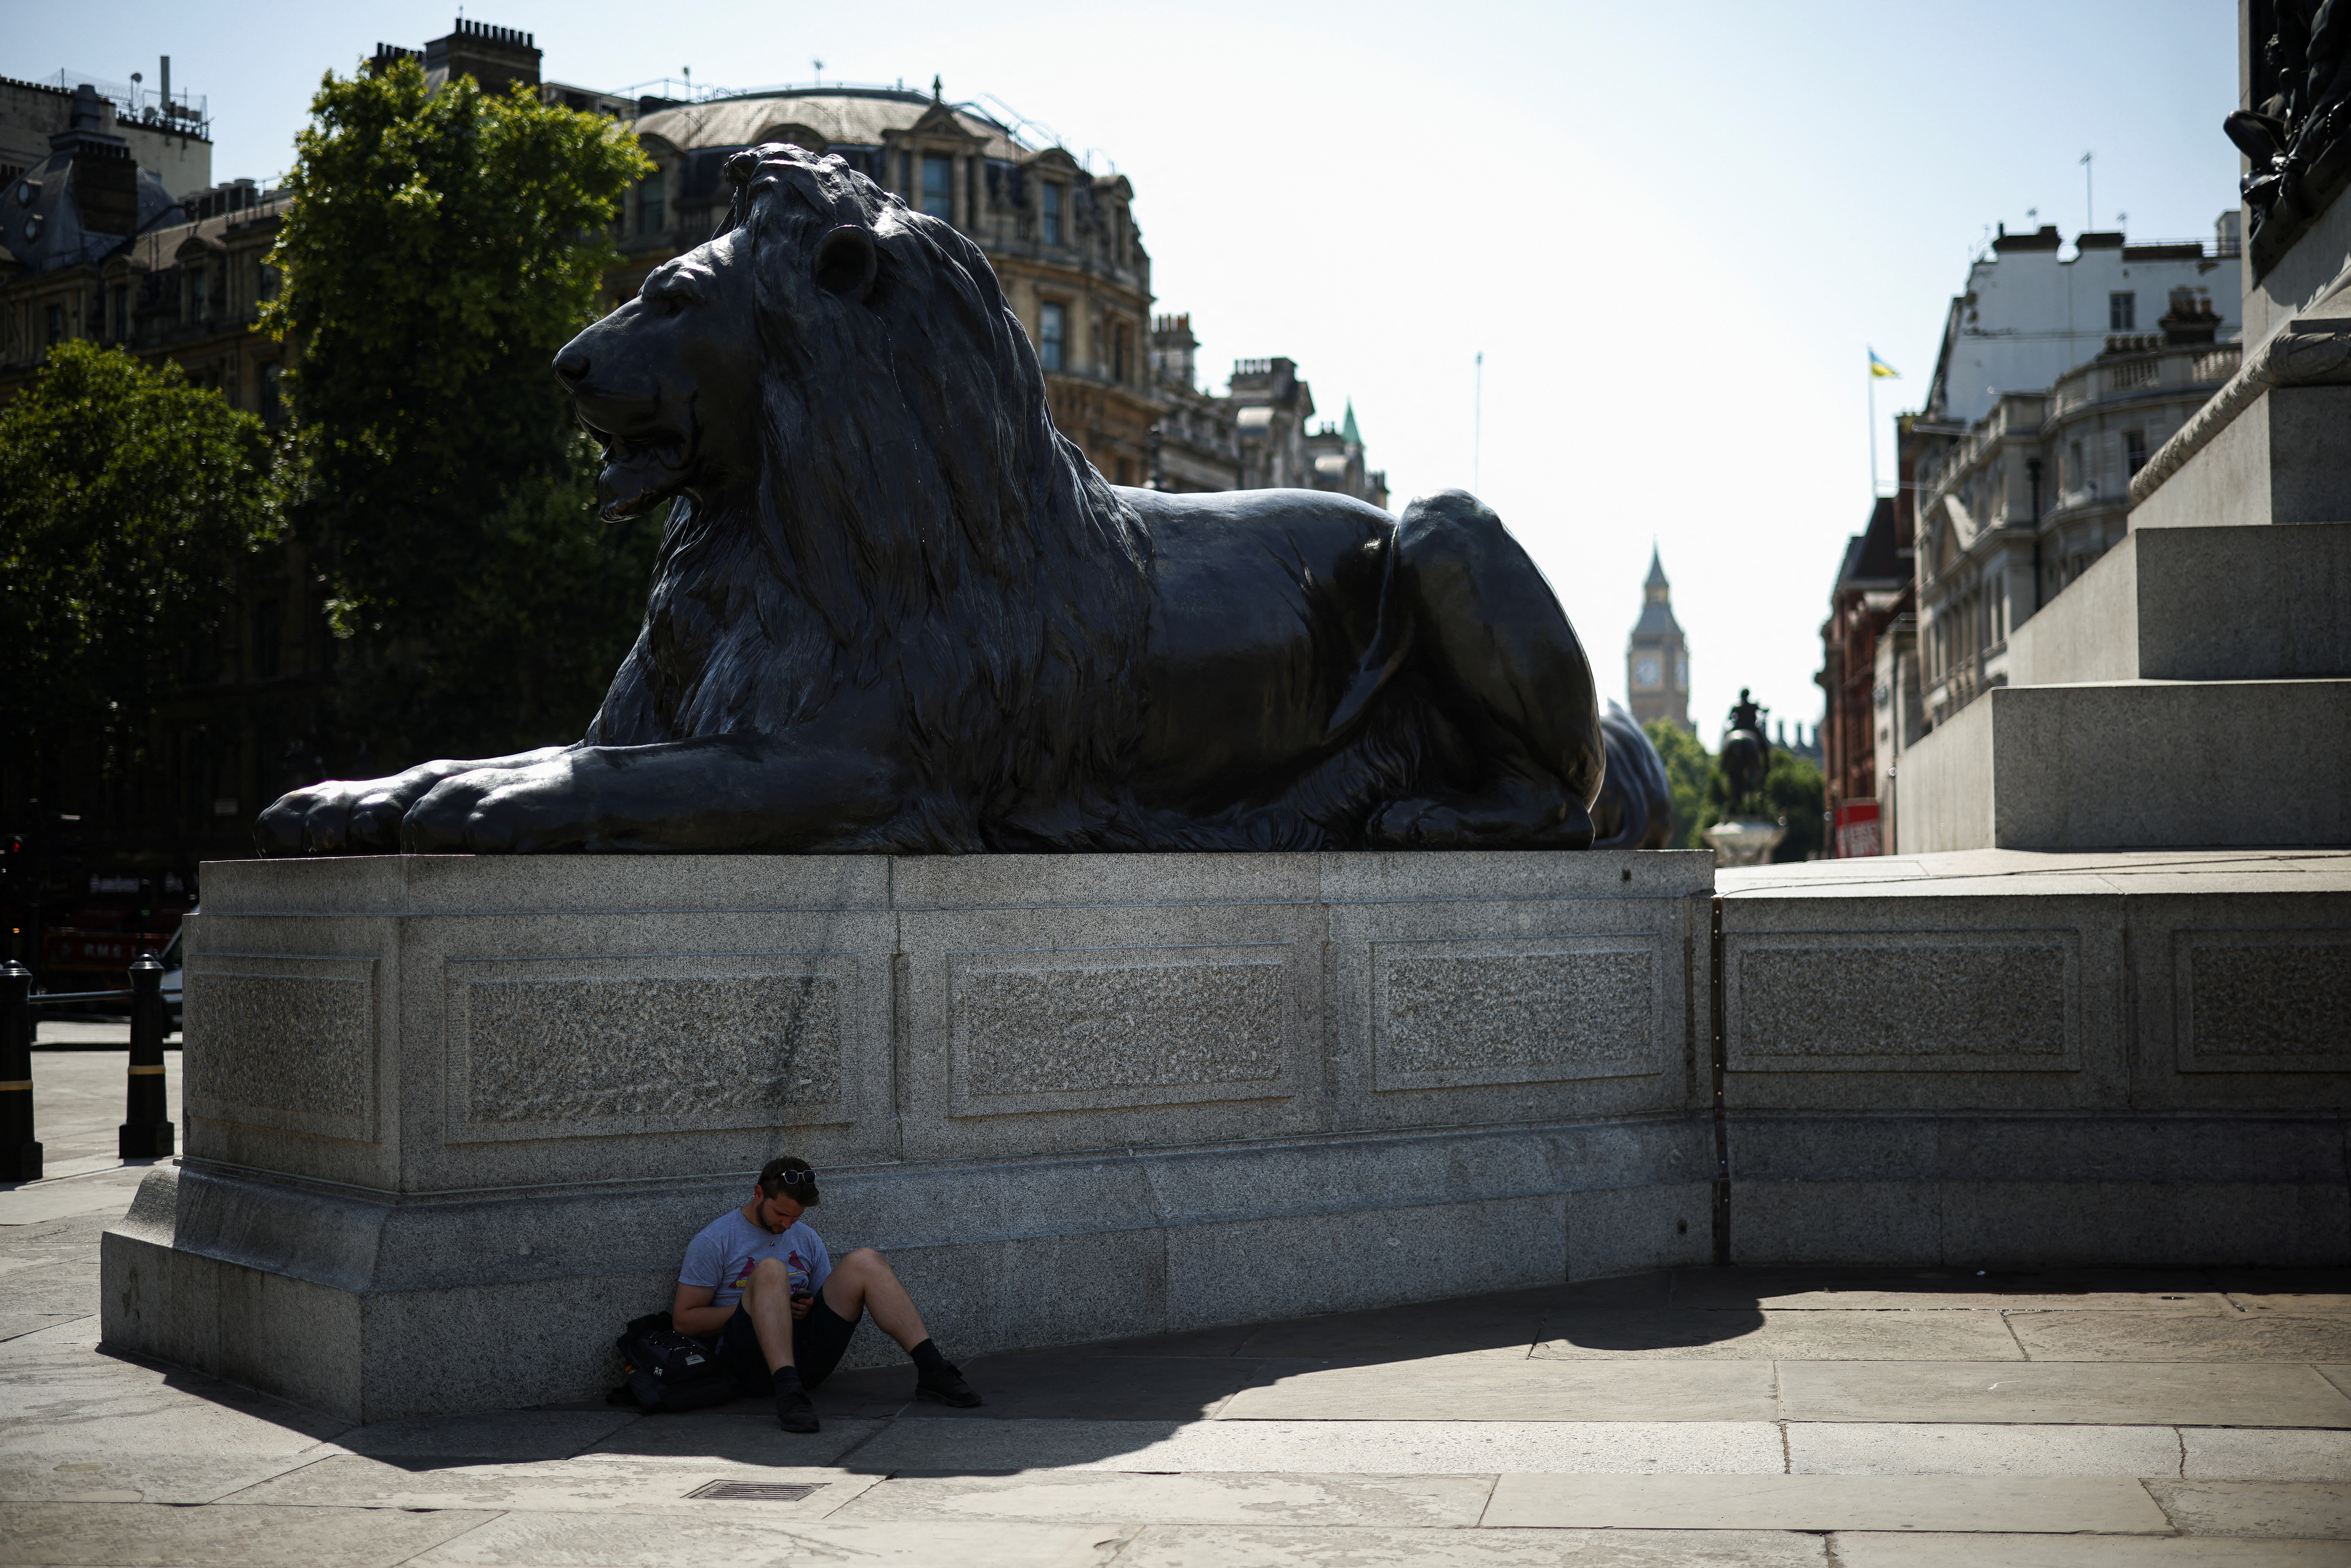 Un uomo si rifugia dall'alta temperatura all'ombra di una statua in Trafalgar Square.  Queste temp "Eccezionale" Perché possono avere un impatto "Nelle persone e nelle infrastrutture"ha detto il Met Office.